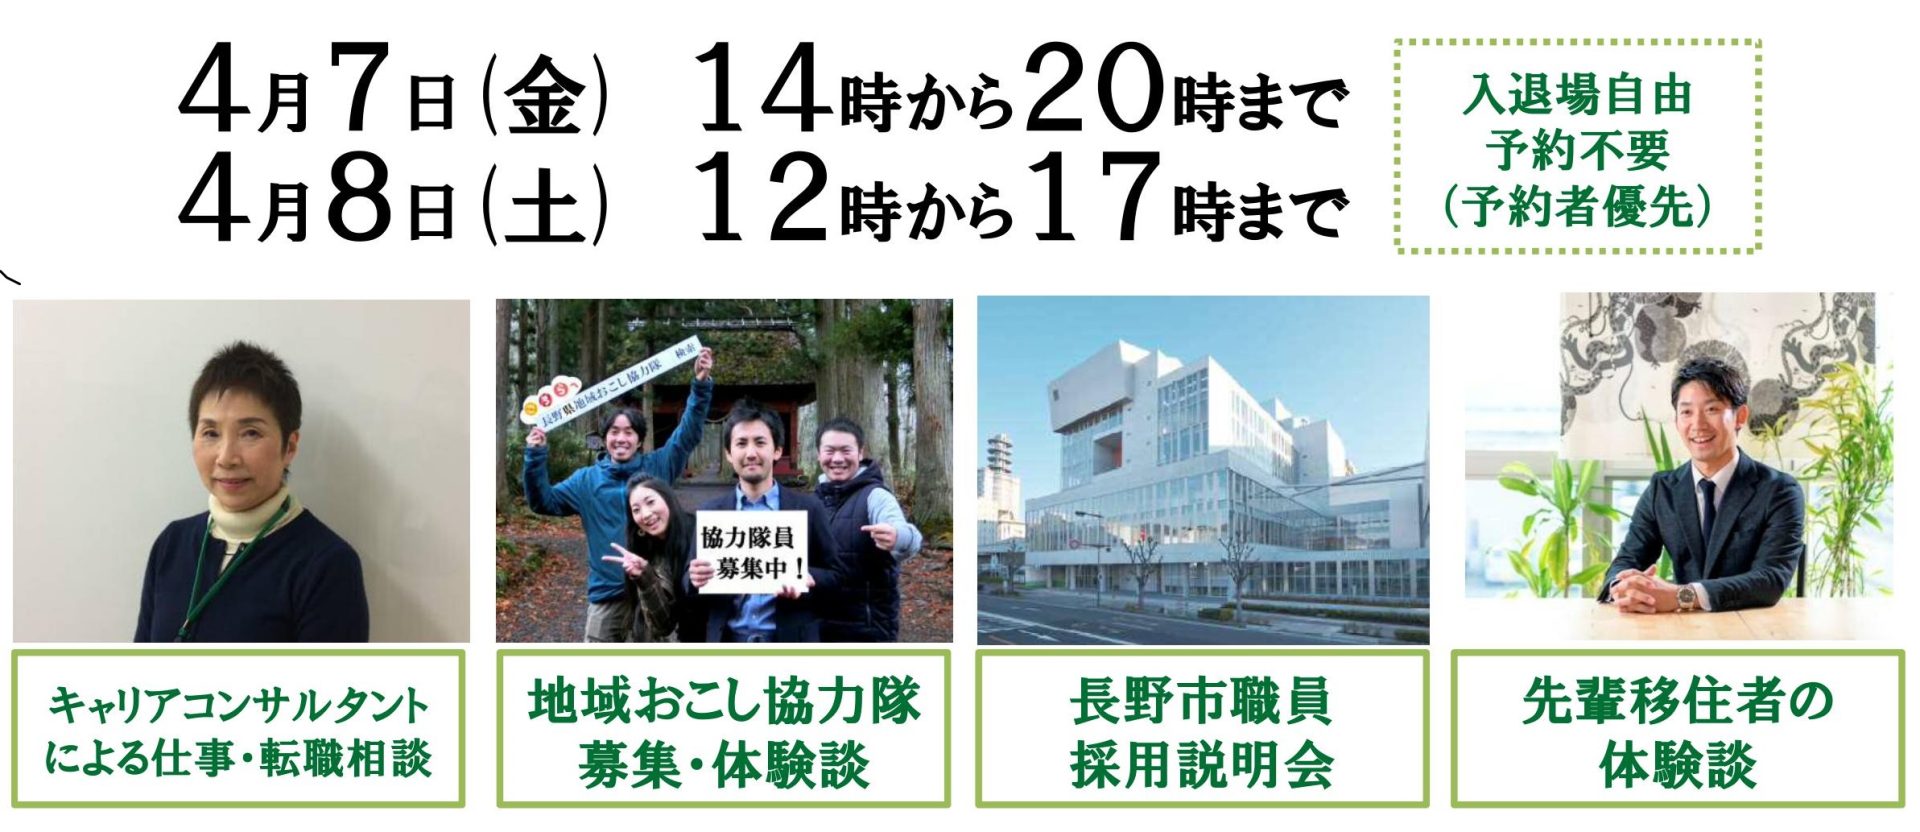 【長野県】ぐるっとながの無料移住相談会 | 移住関連イベント情報